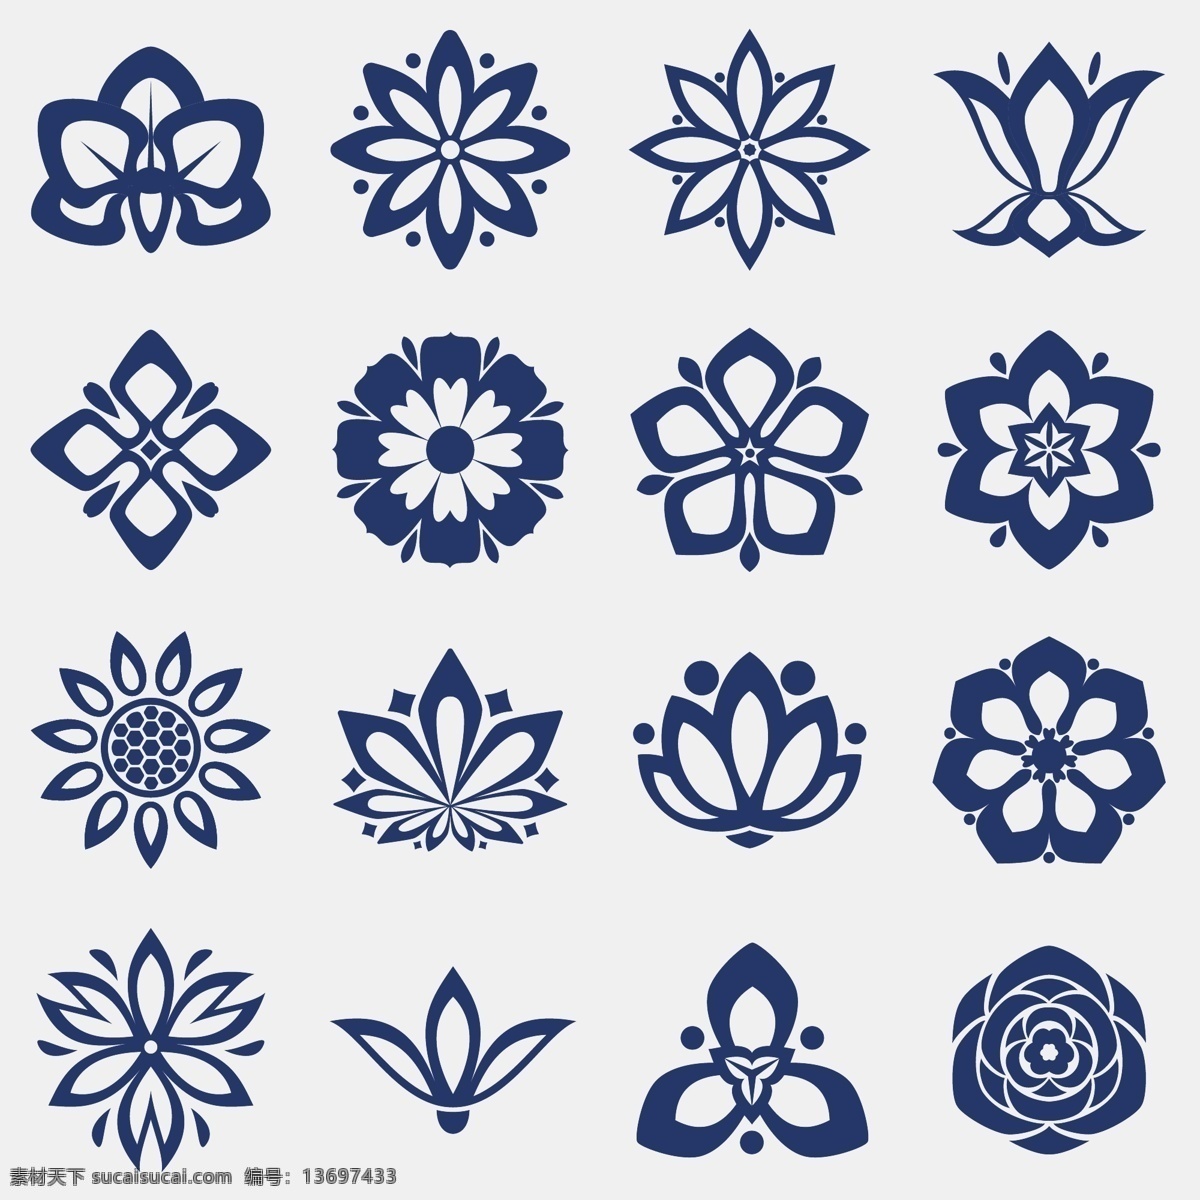 花的图标集 花卉 图标 装饰 自然 形状 花卉装饰 花卉图标 收藏 白色